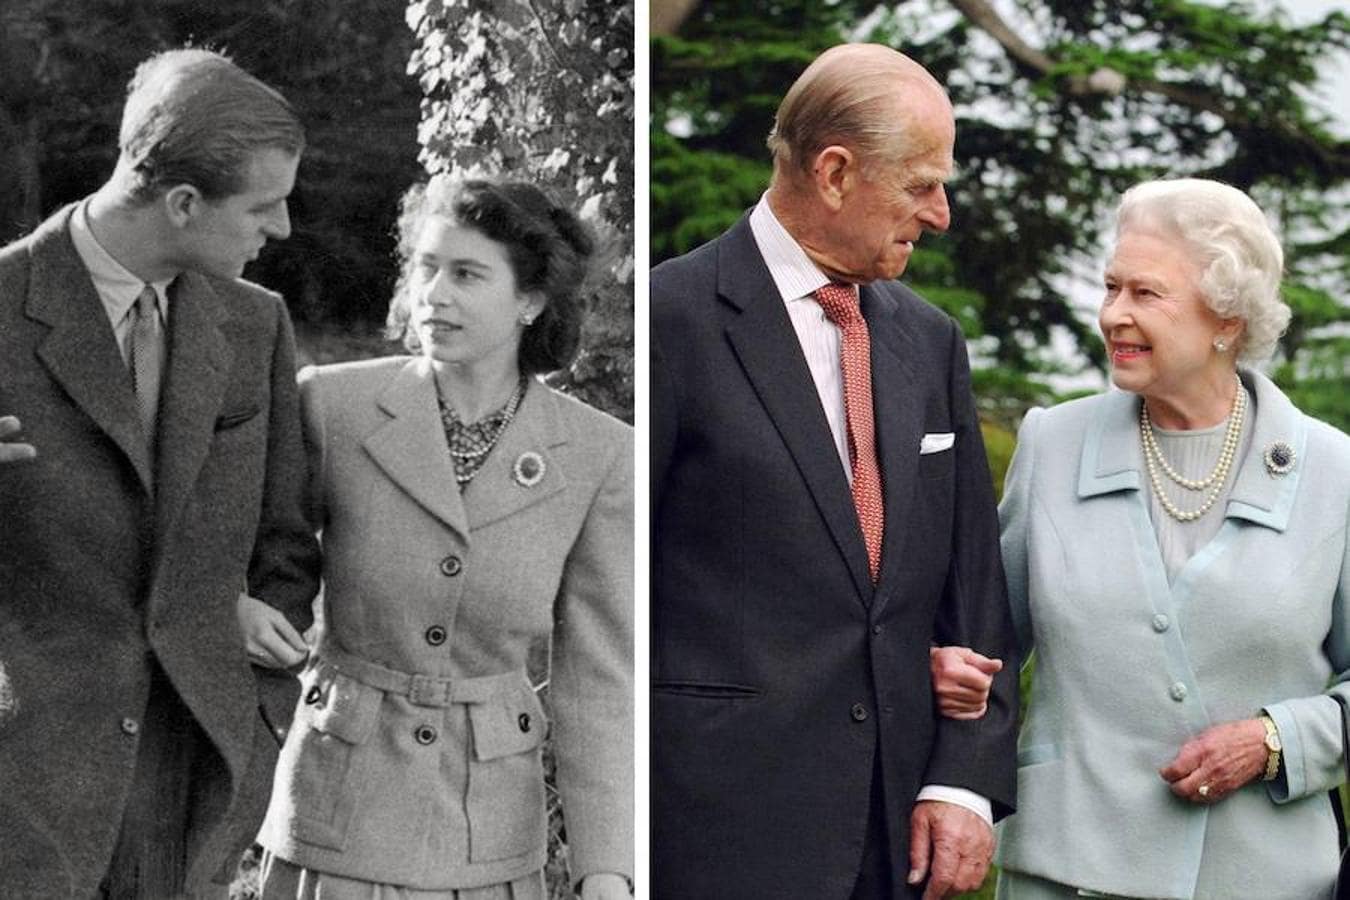 Bodas de diamante. El Duque de Edimburgo lleva junto a la Reina Isabel II 70 años de matrimonio. Forman una de las parejas más longevas de la realeza actual.